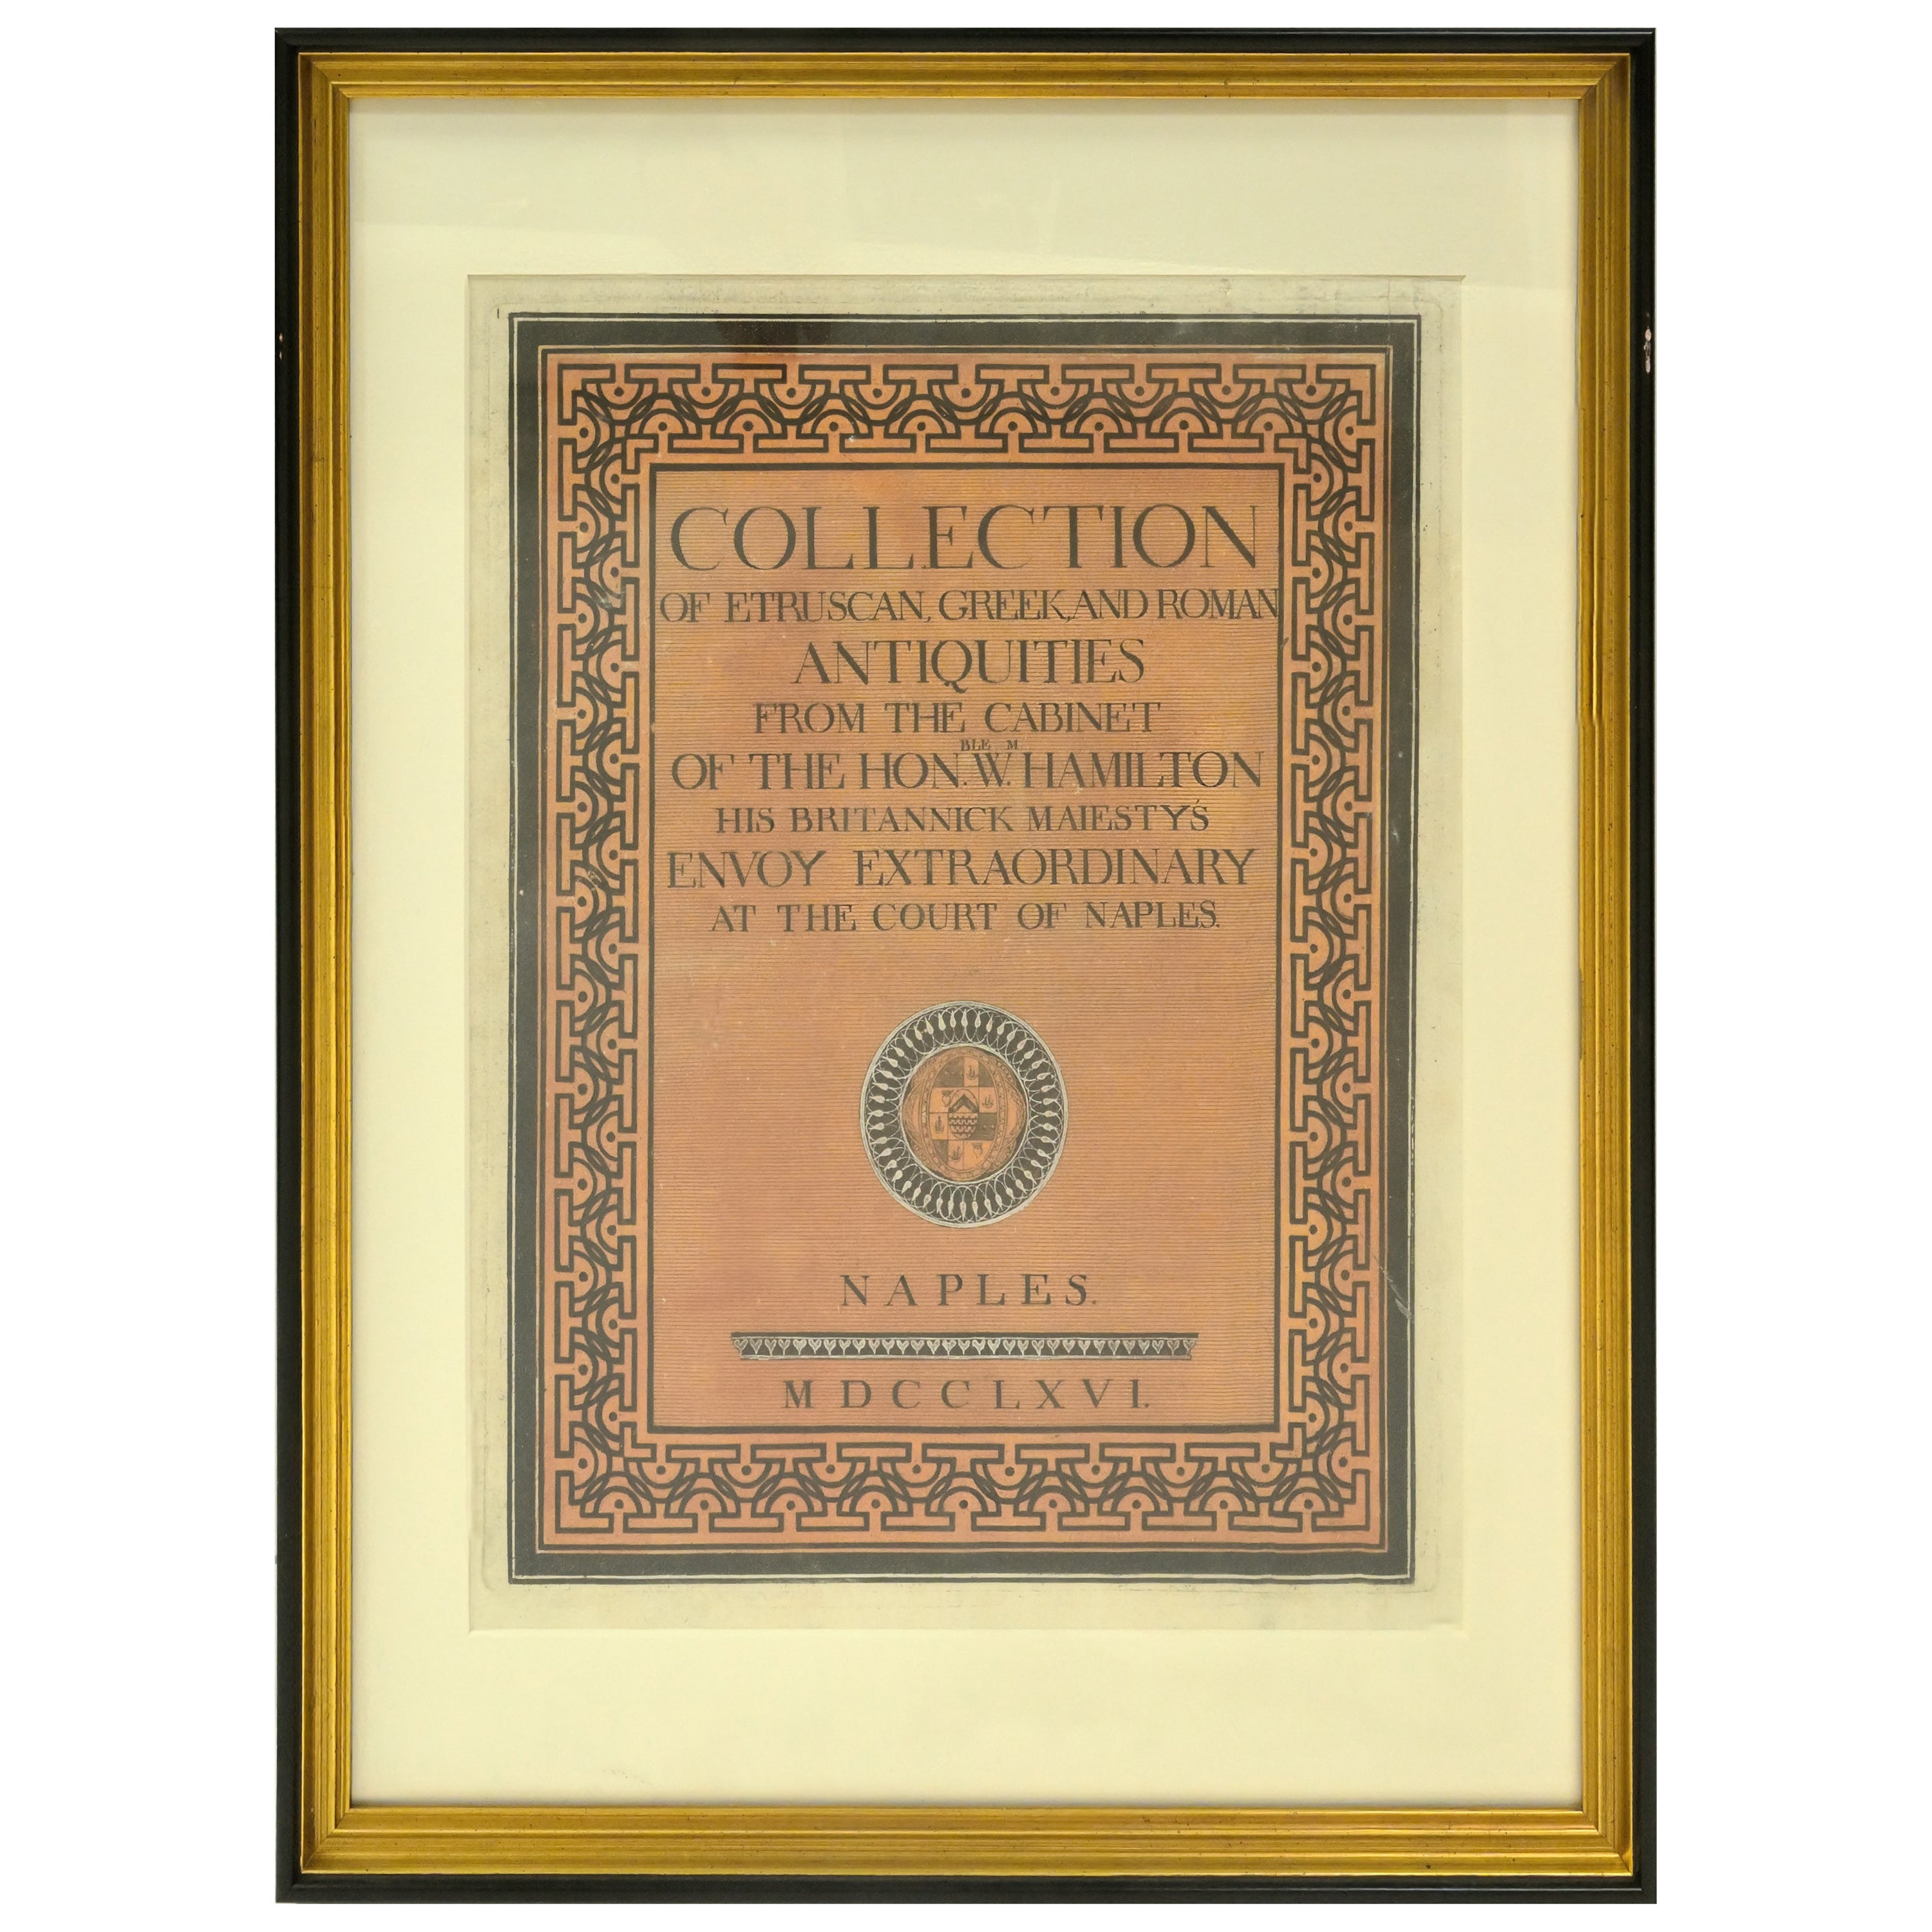 Framed William Hamilton Antiquites Etrusques, Grecques Et Romain Cover For Sale